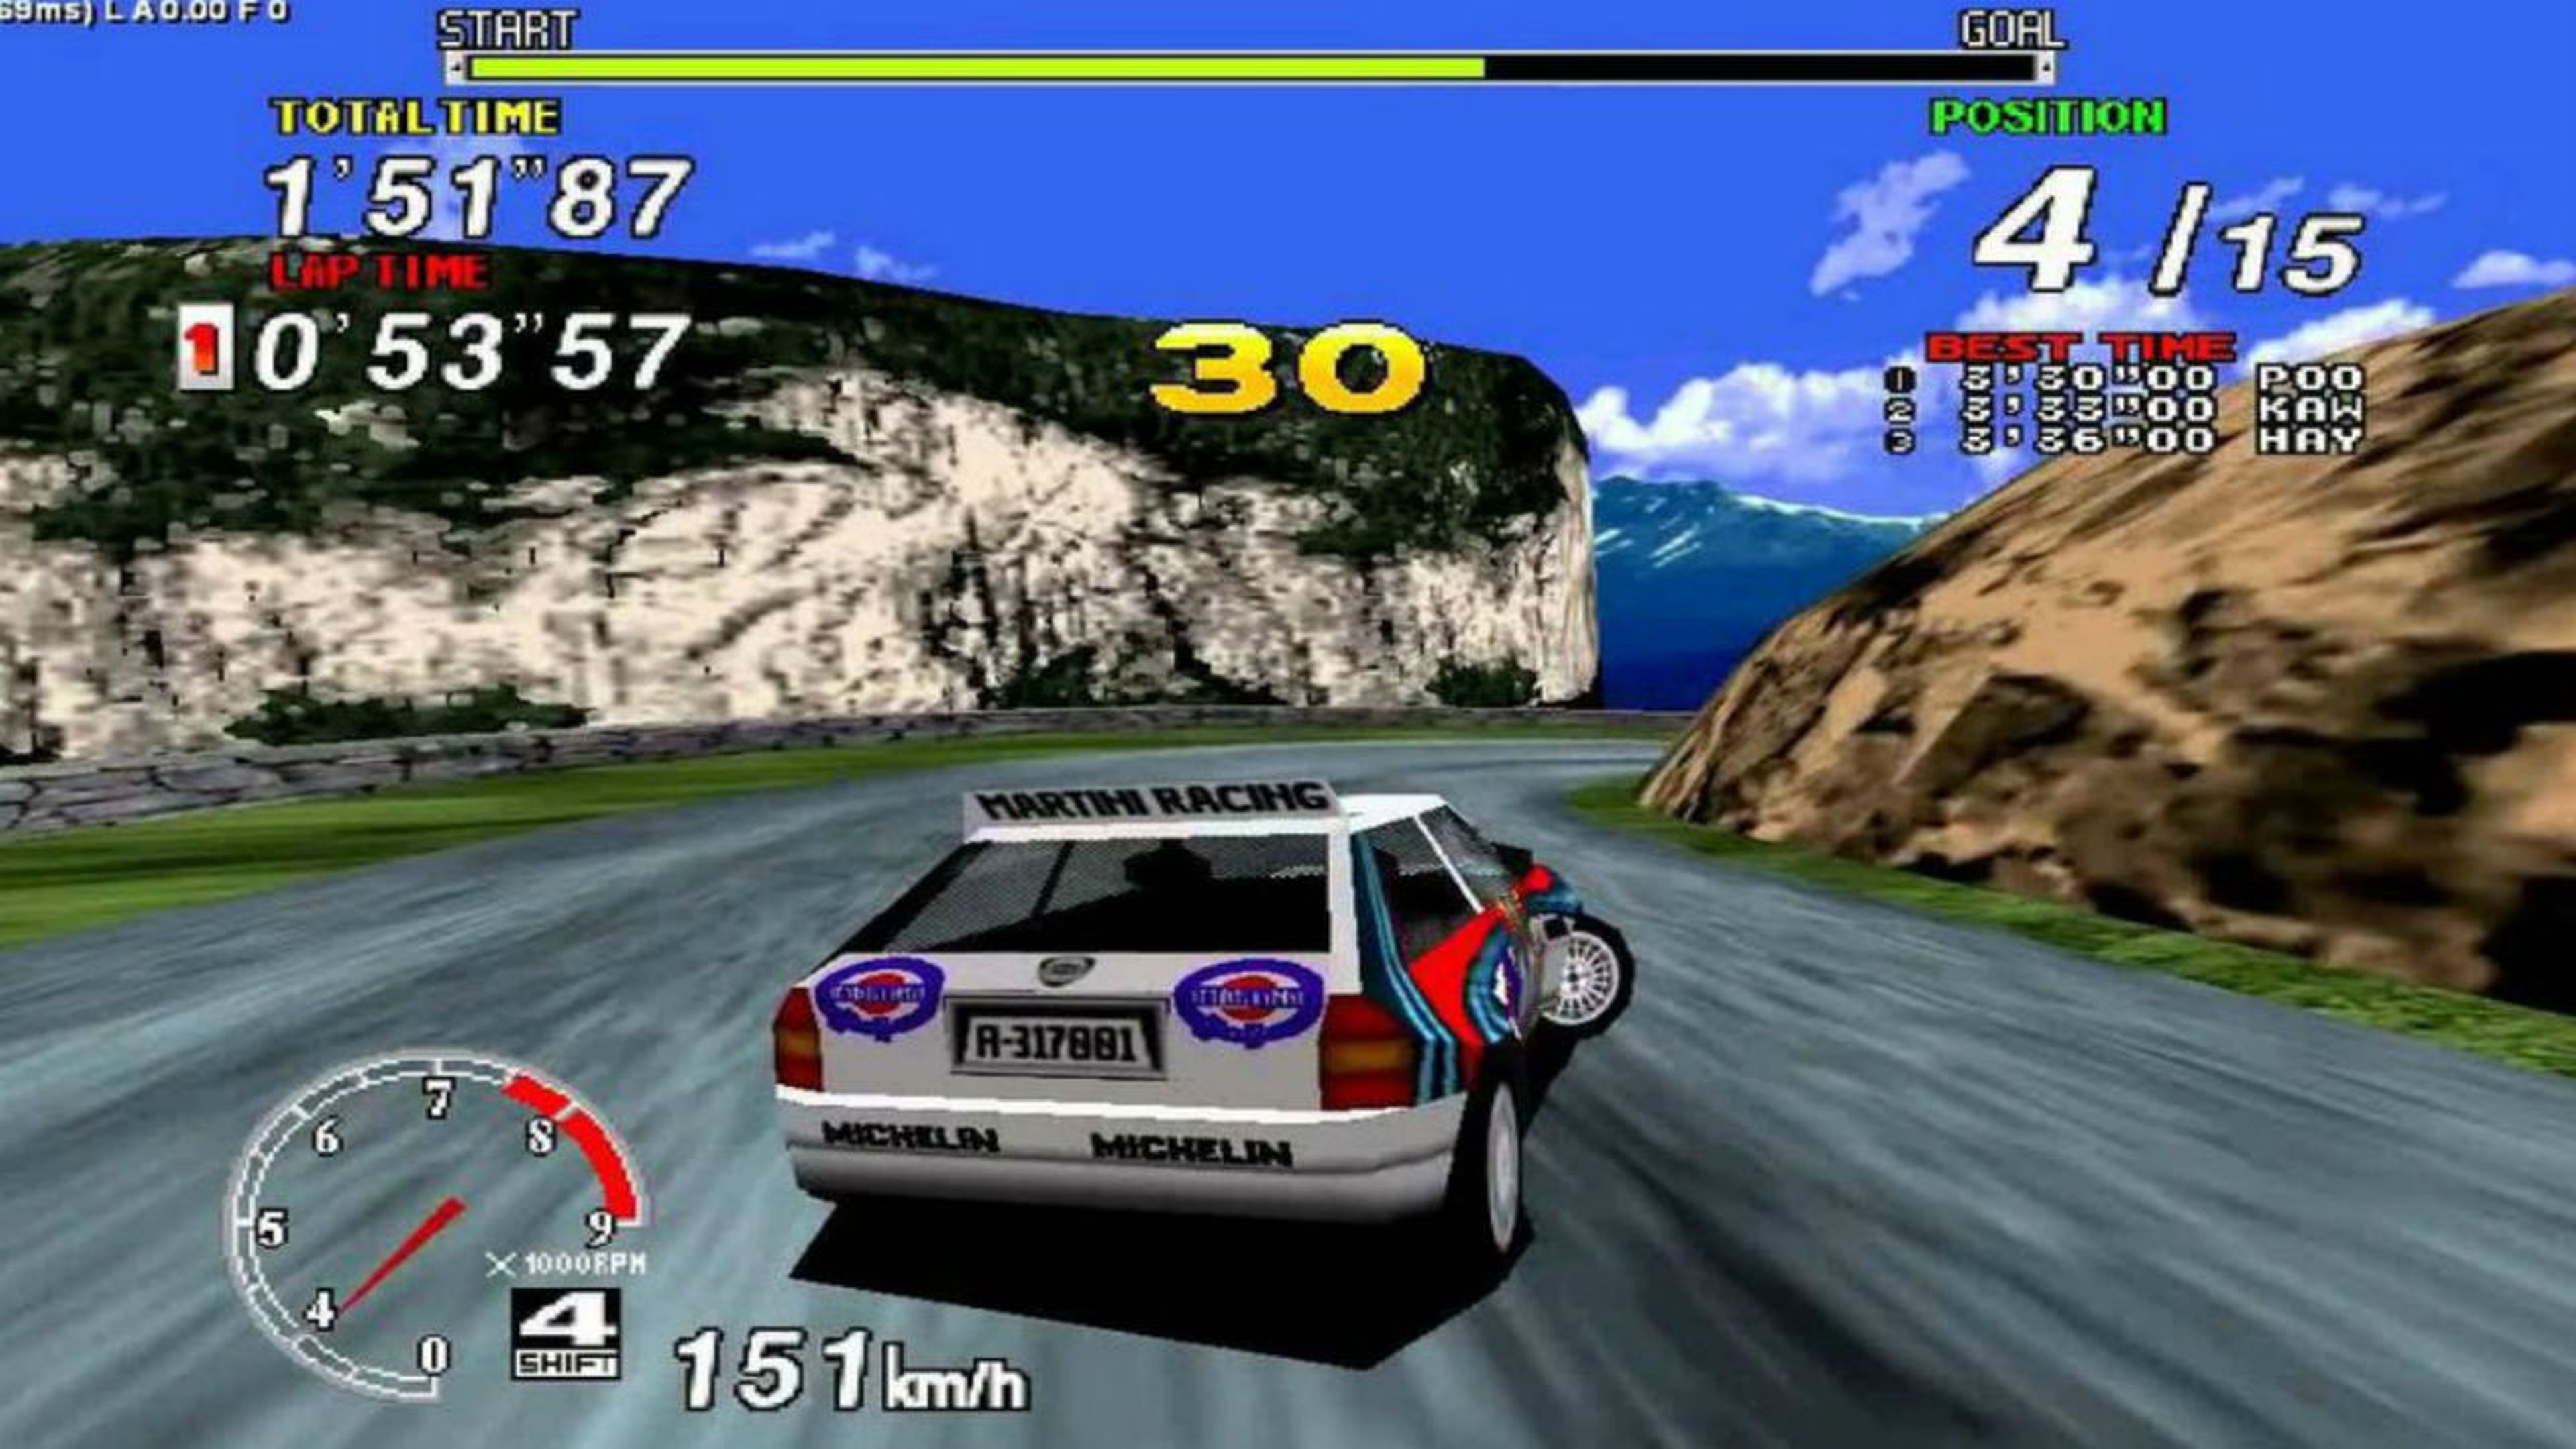 Juegos de carros carreras - juegos arcade de carreras de coches